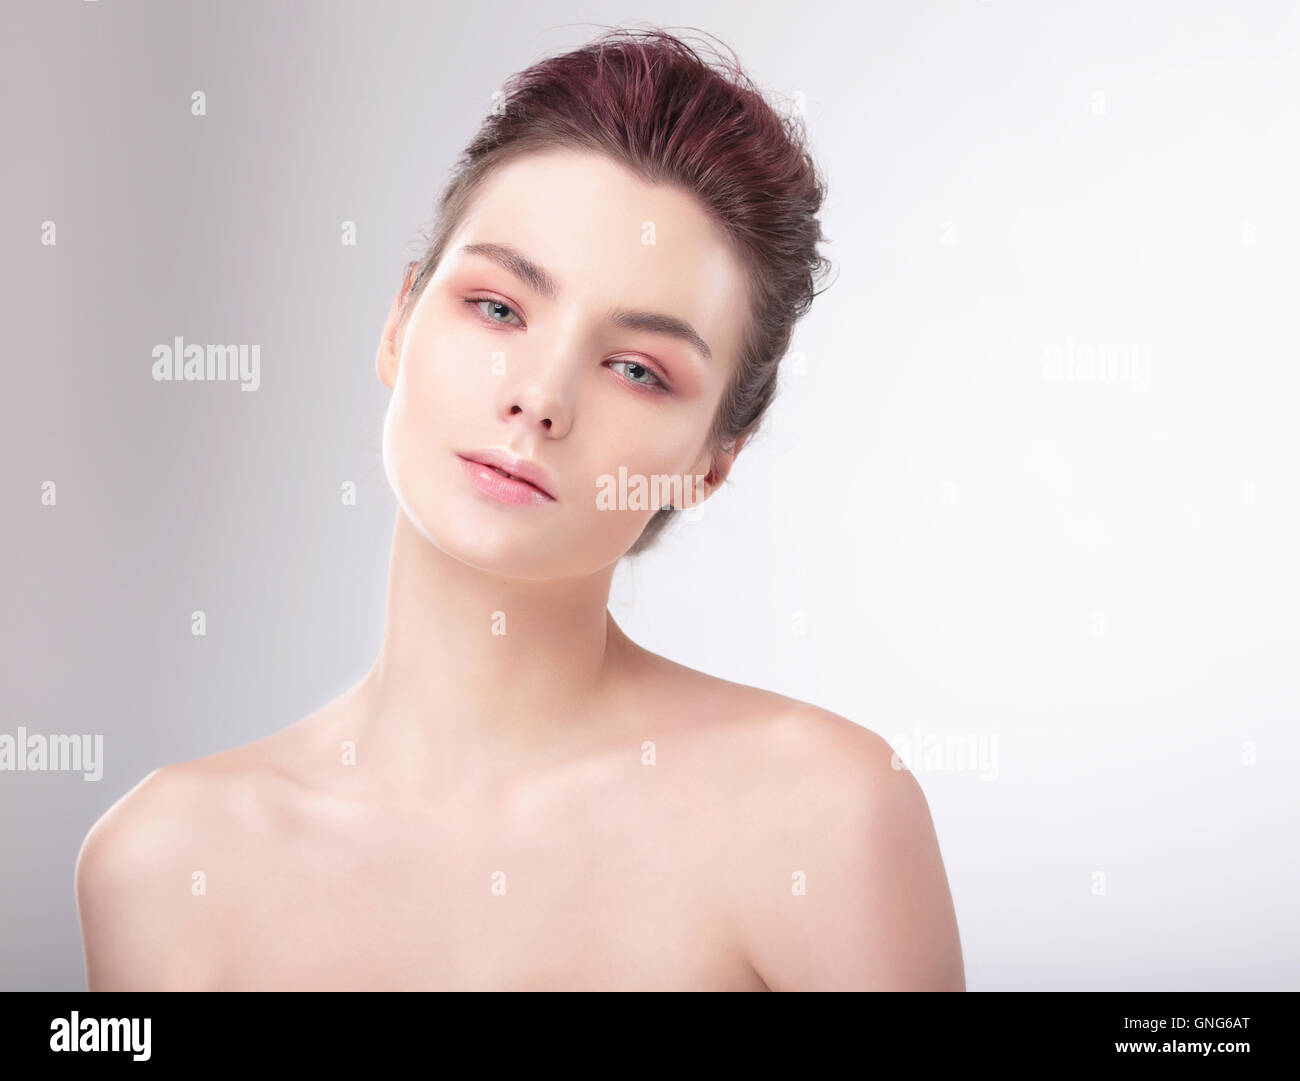 Ritratto di donna con la pelle pulita. Naturale, pulita e luminosa. Foto Stock